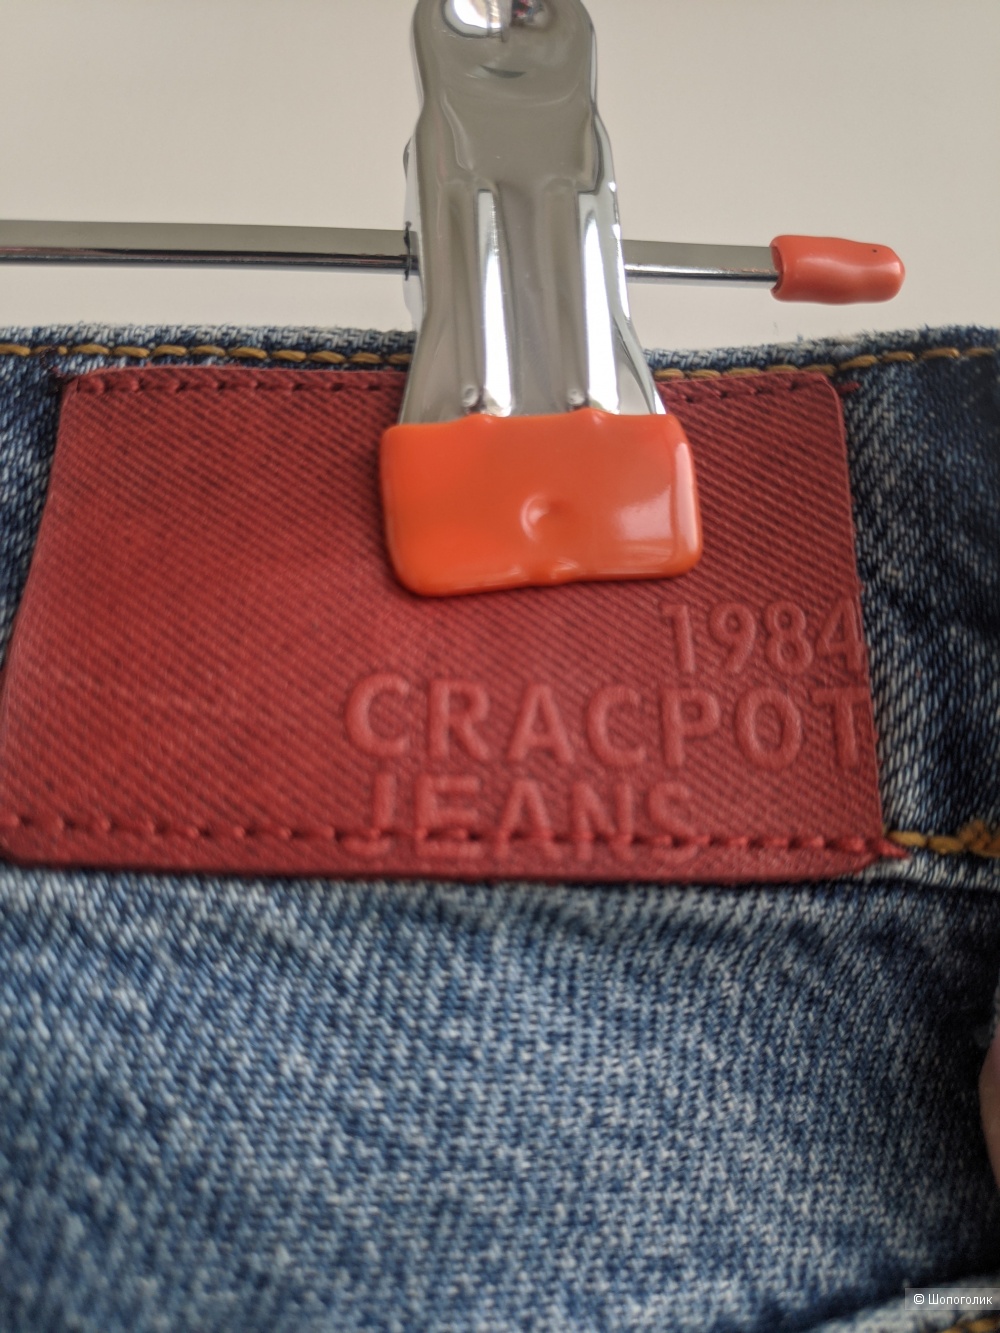 Джинсы Craсpot Jeans Турция, 42 RUS